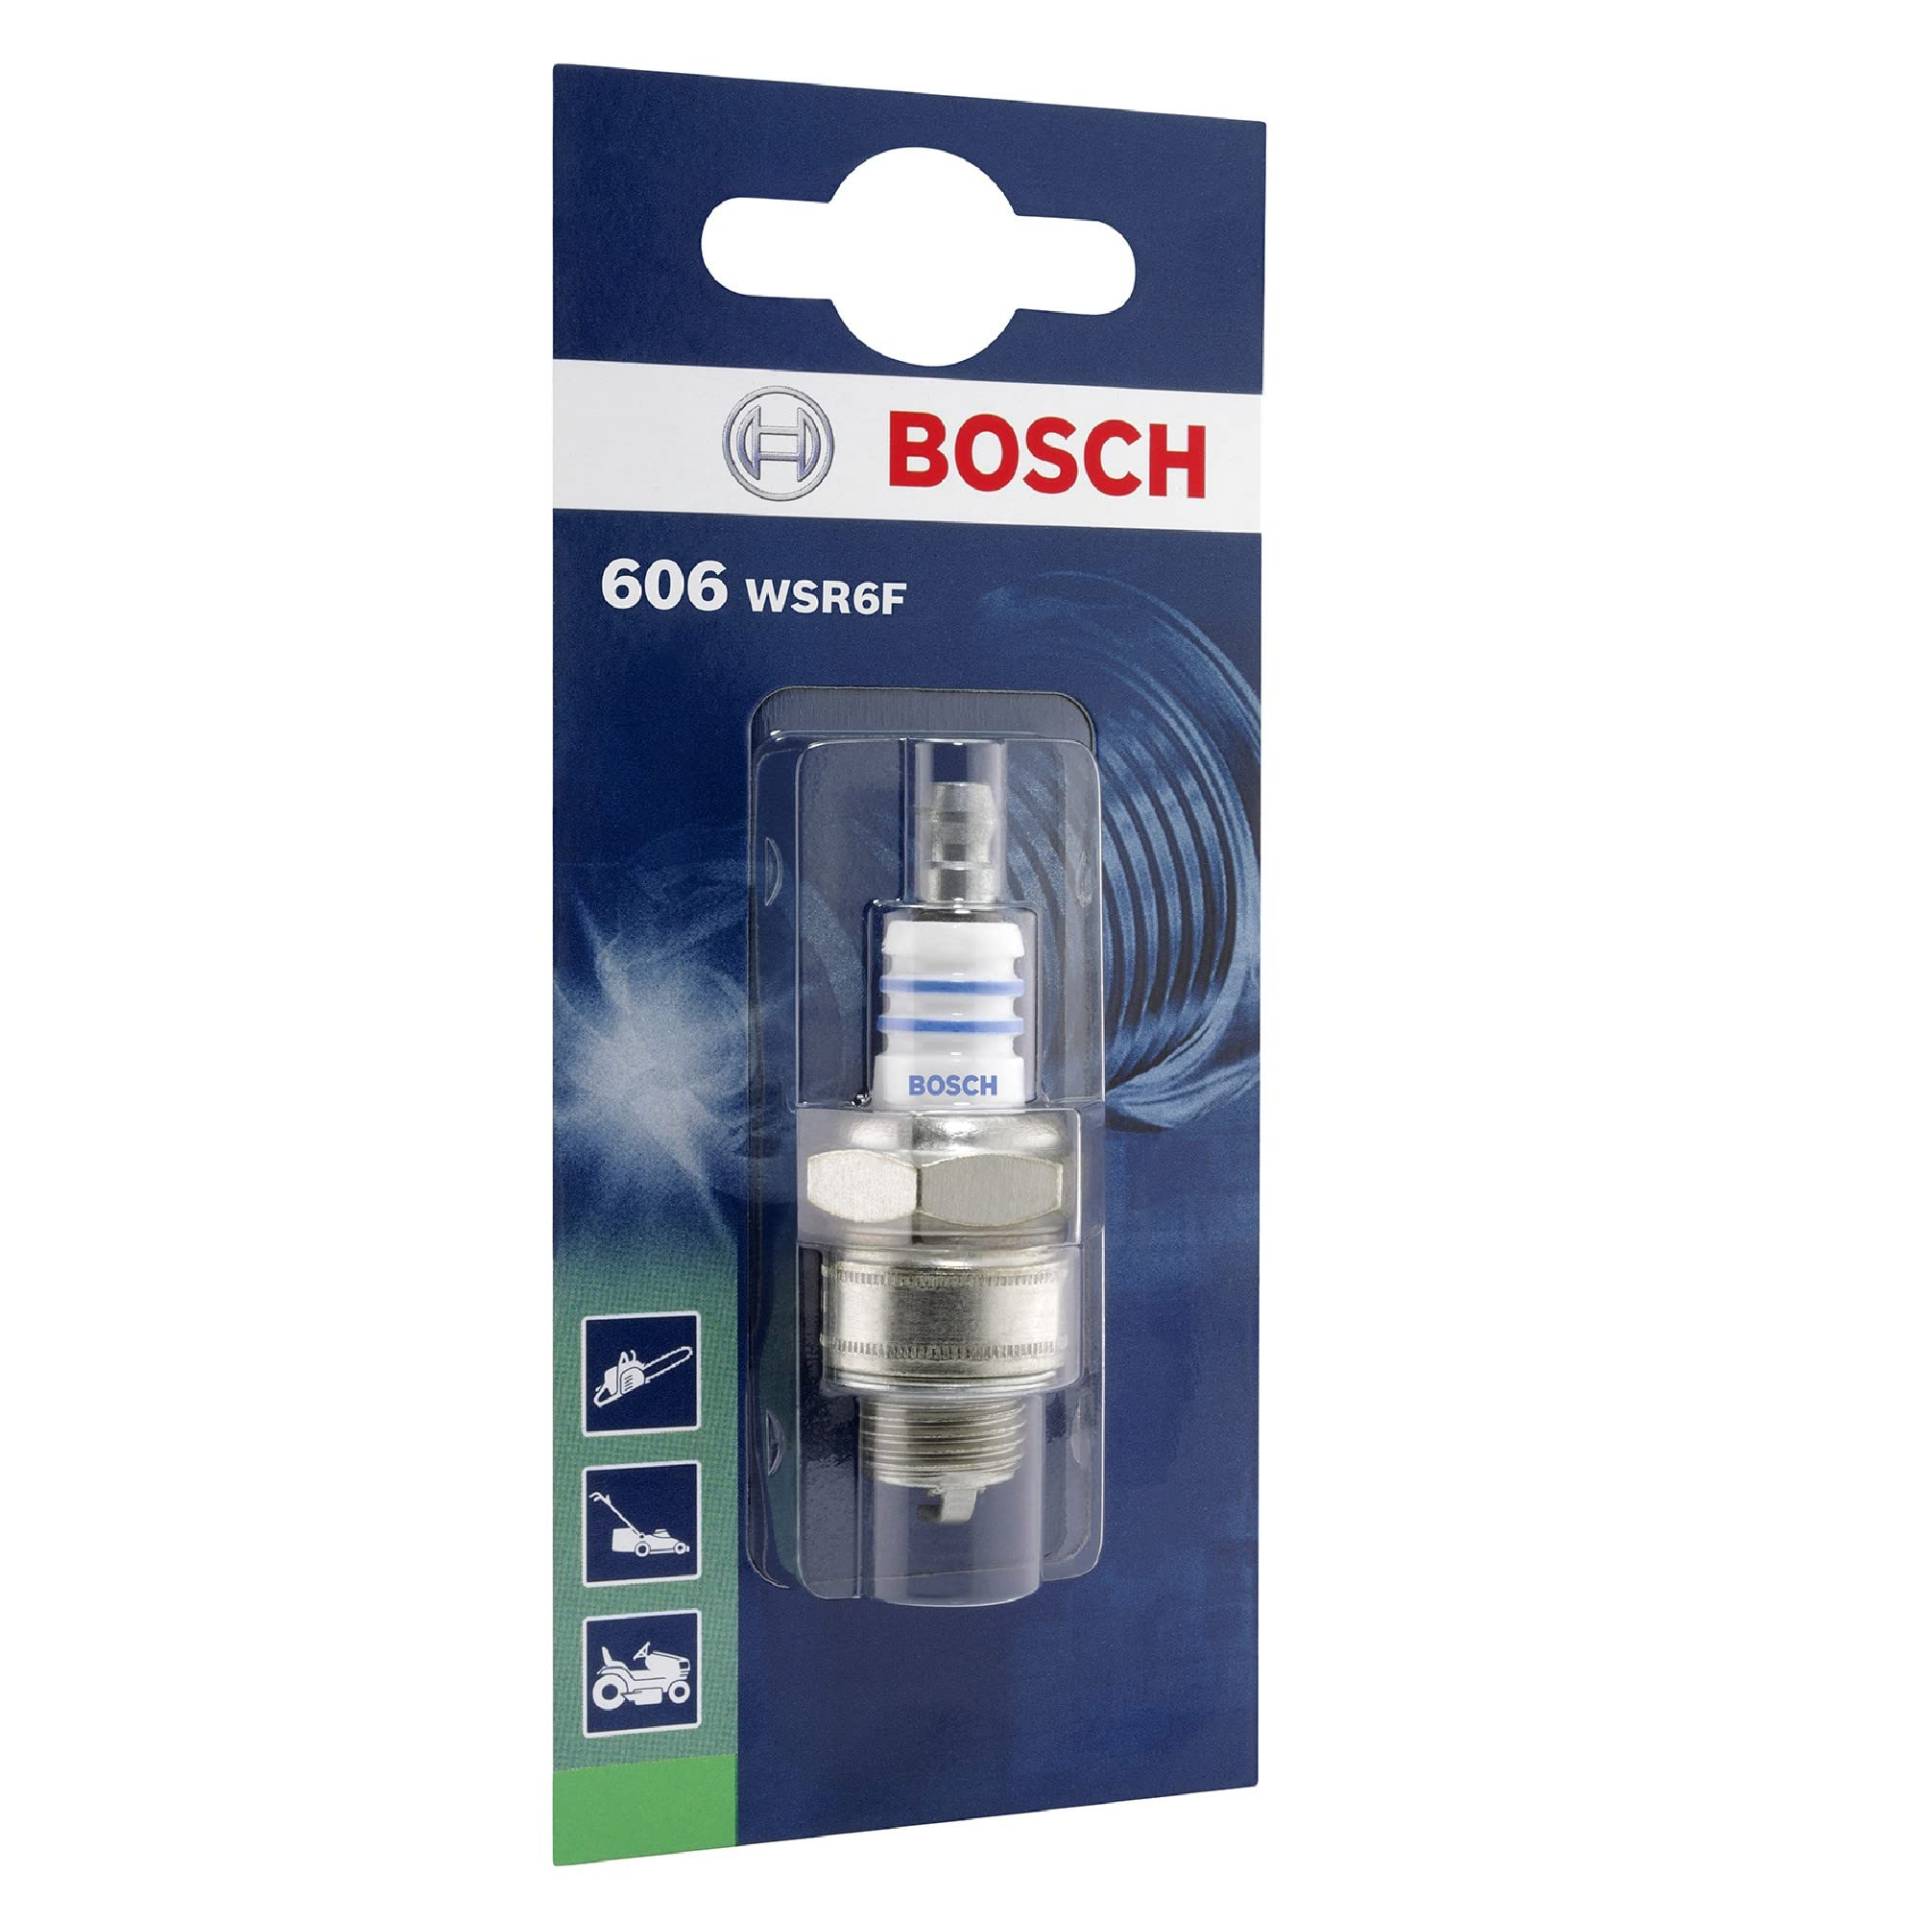 Bosch WSR6F (606) - Zündkerze für Gartengeräte - 1 Stück von Bosch Automotive